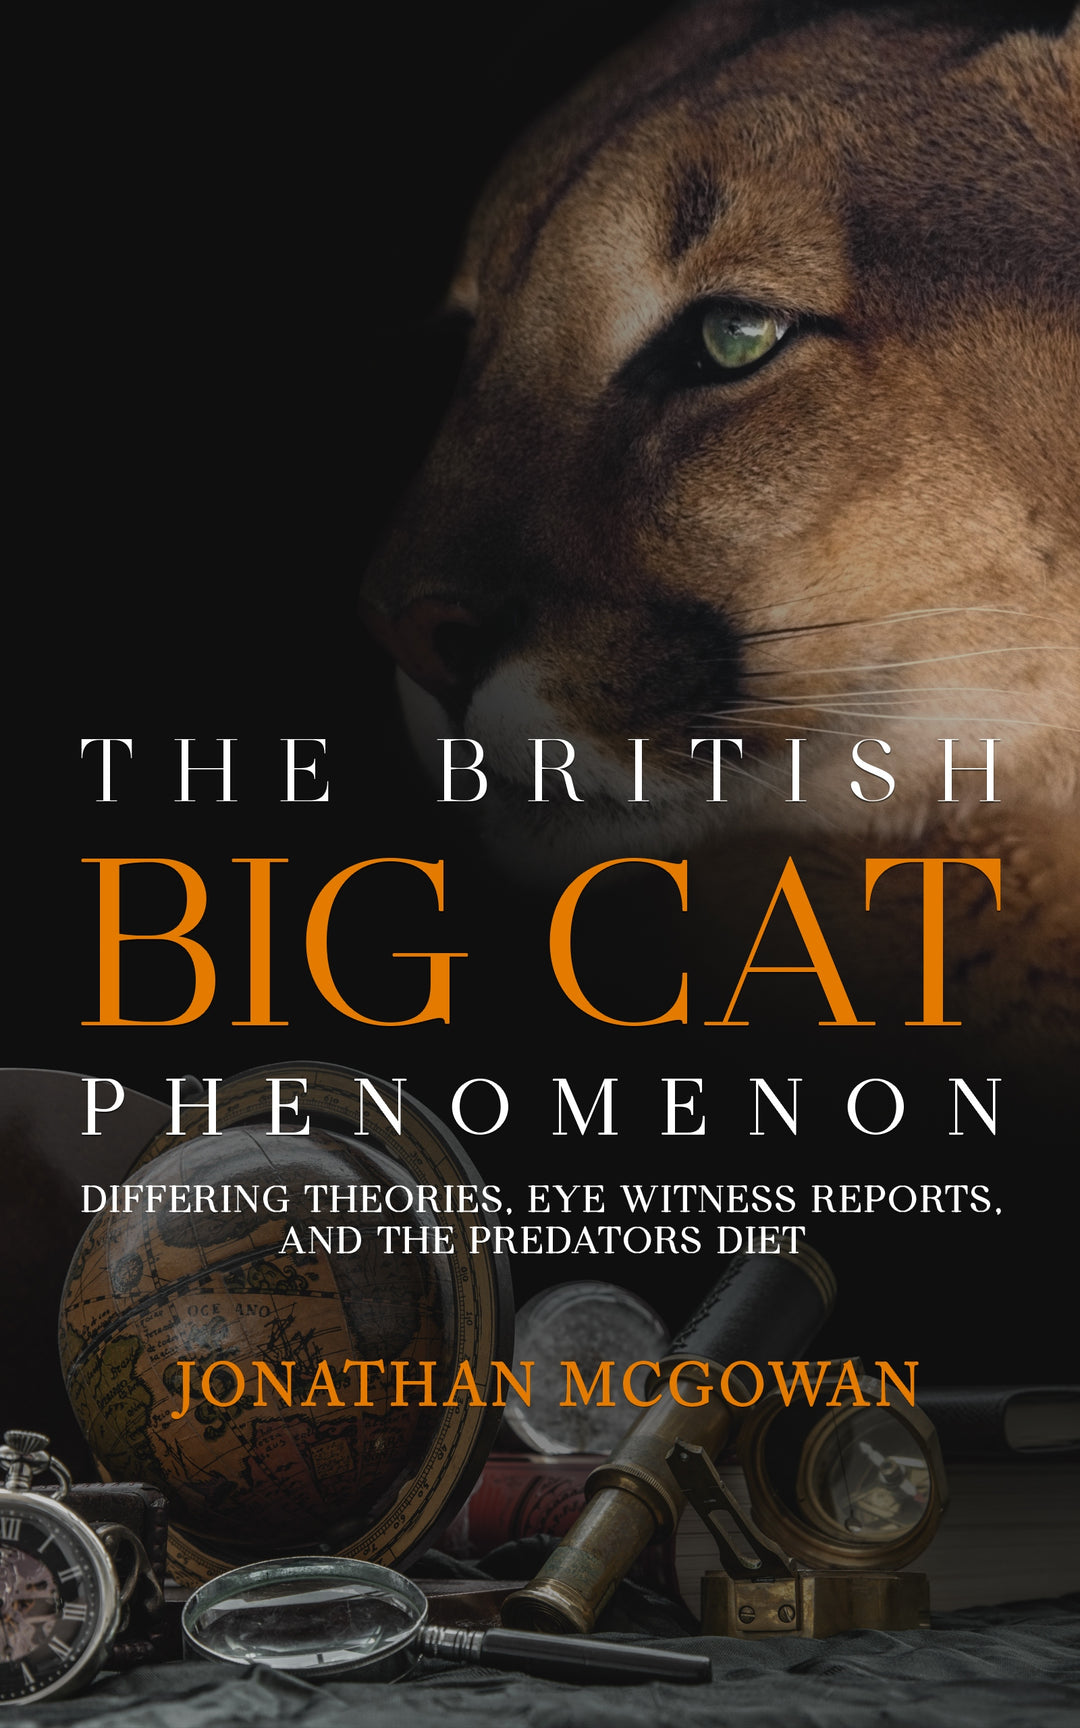 The British Big Cat Phenomenon: Differing Theories, Eye Witness Reports, and the Predators Diet